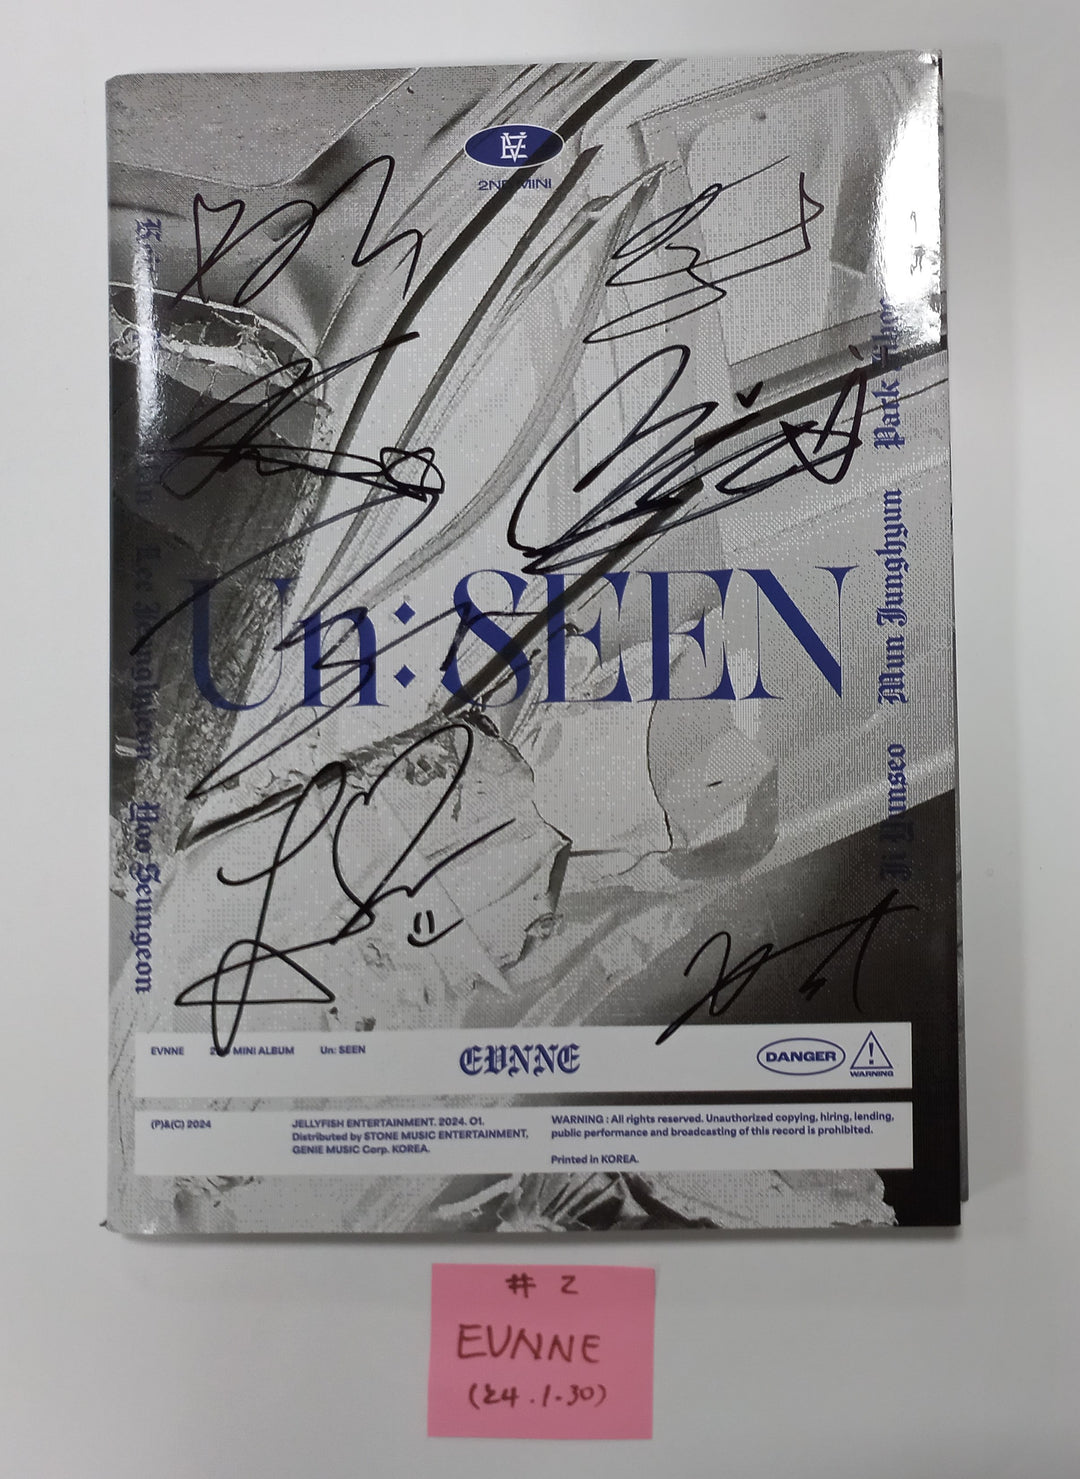 EVNNE "Un: SEEN" - Hand Autographed(Signed) Promo Album [24.1.30]